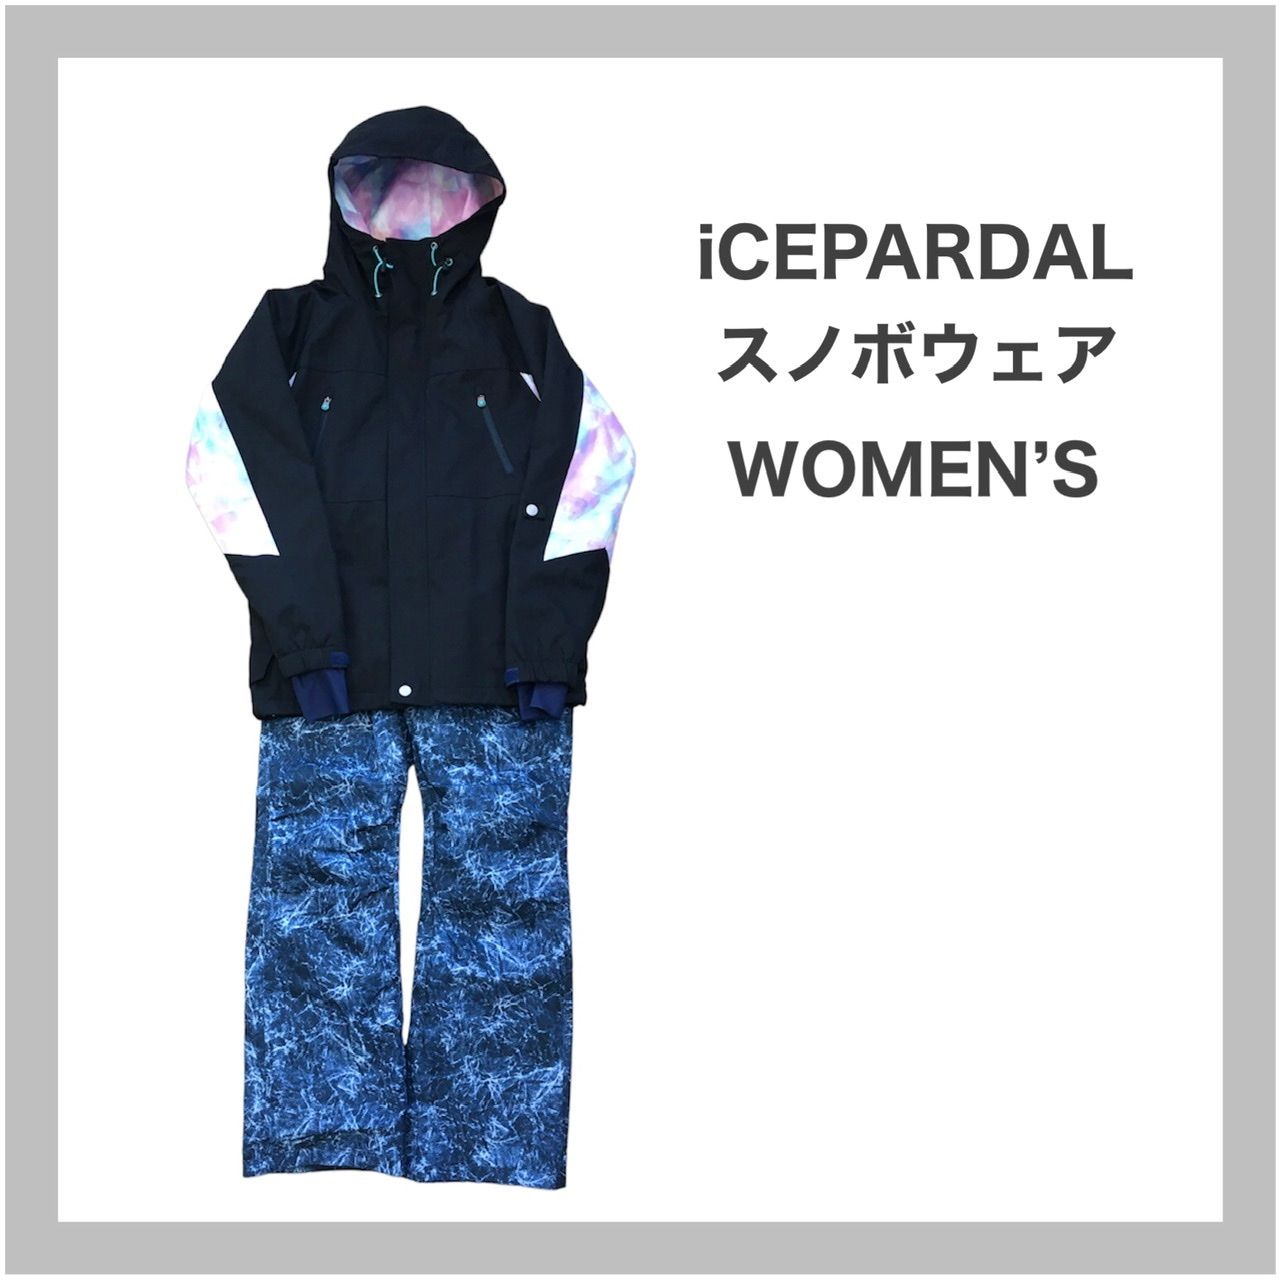 ICEPARDAL アイスパーダル スノボウェア スキーウェア セット M | agb.md